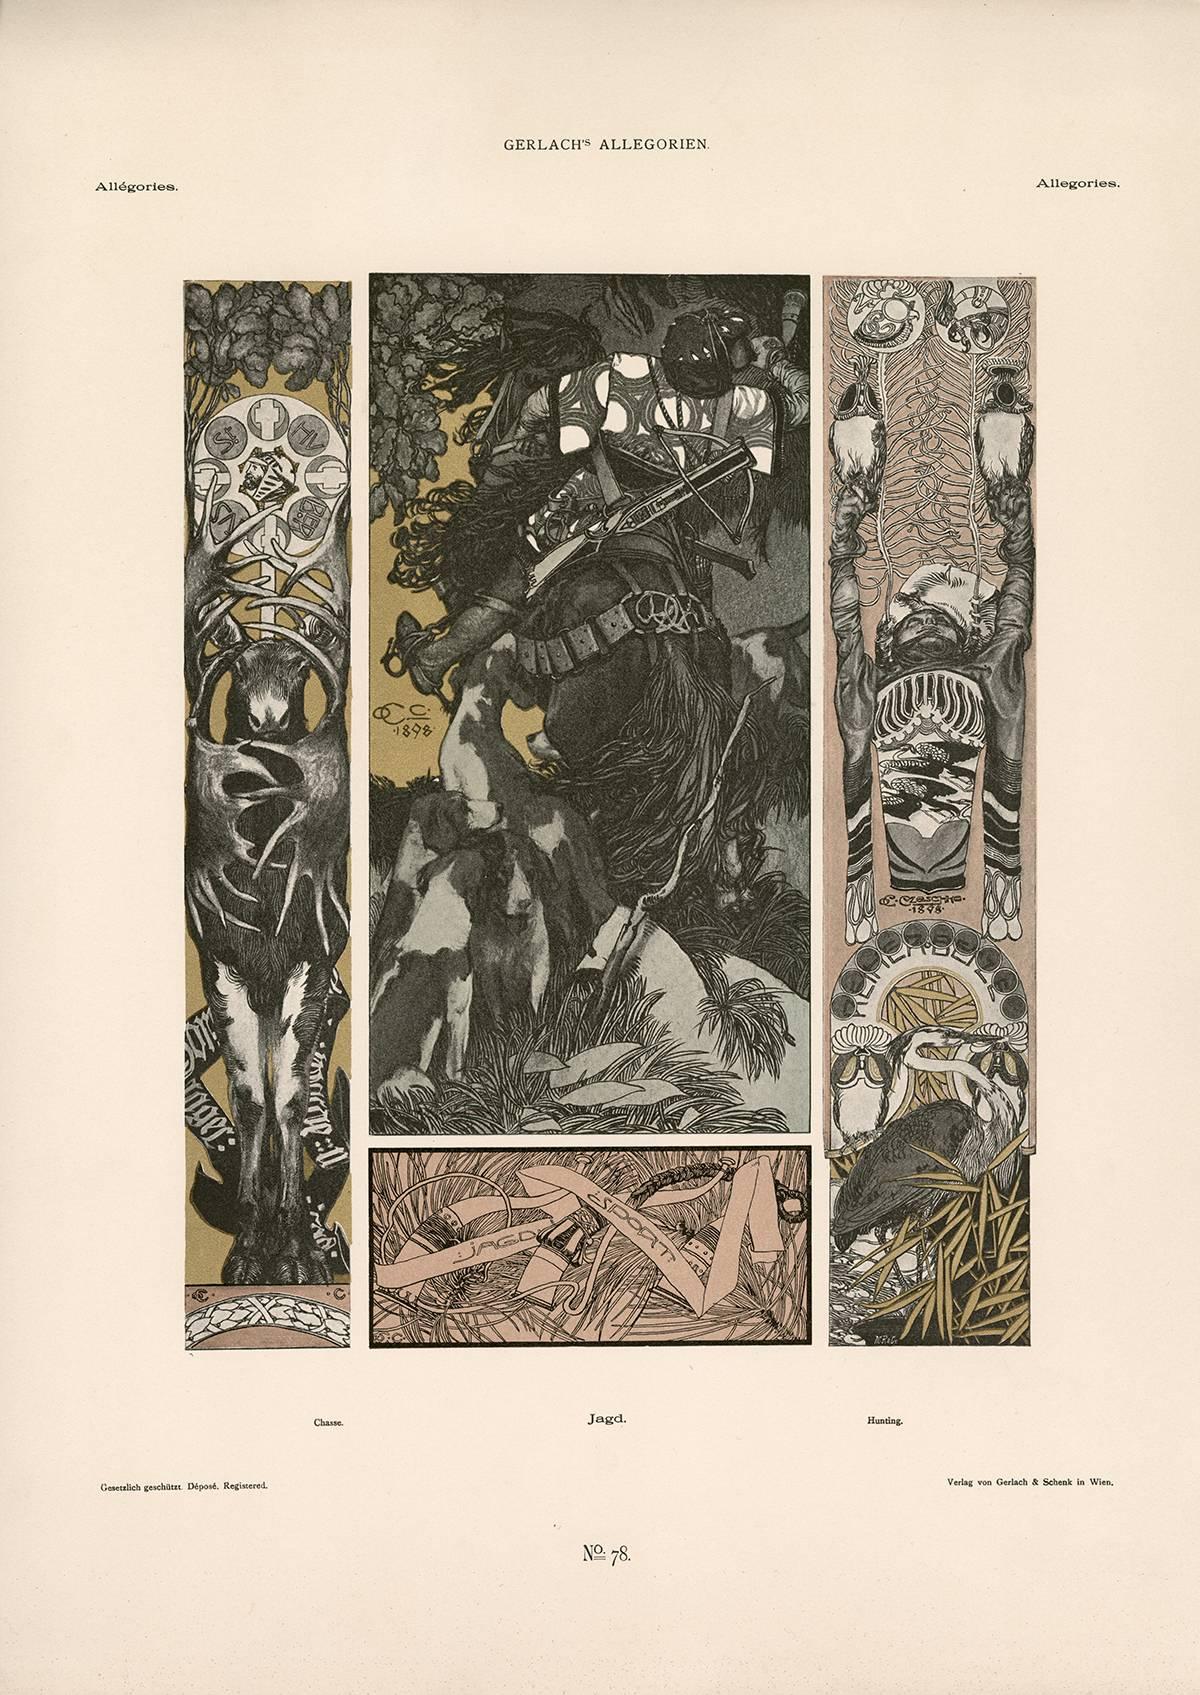 Gerlach's Allegorien Plate #78: "Hunting" Lithograph by Carl Otto Czeschka